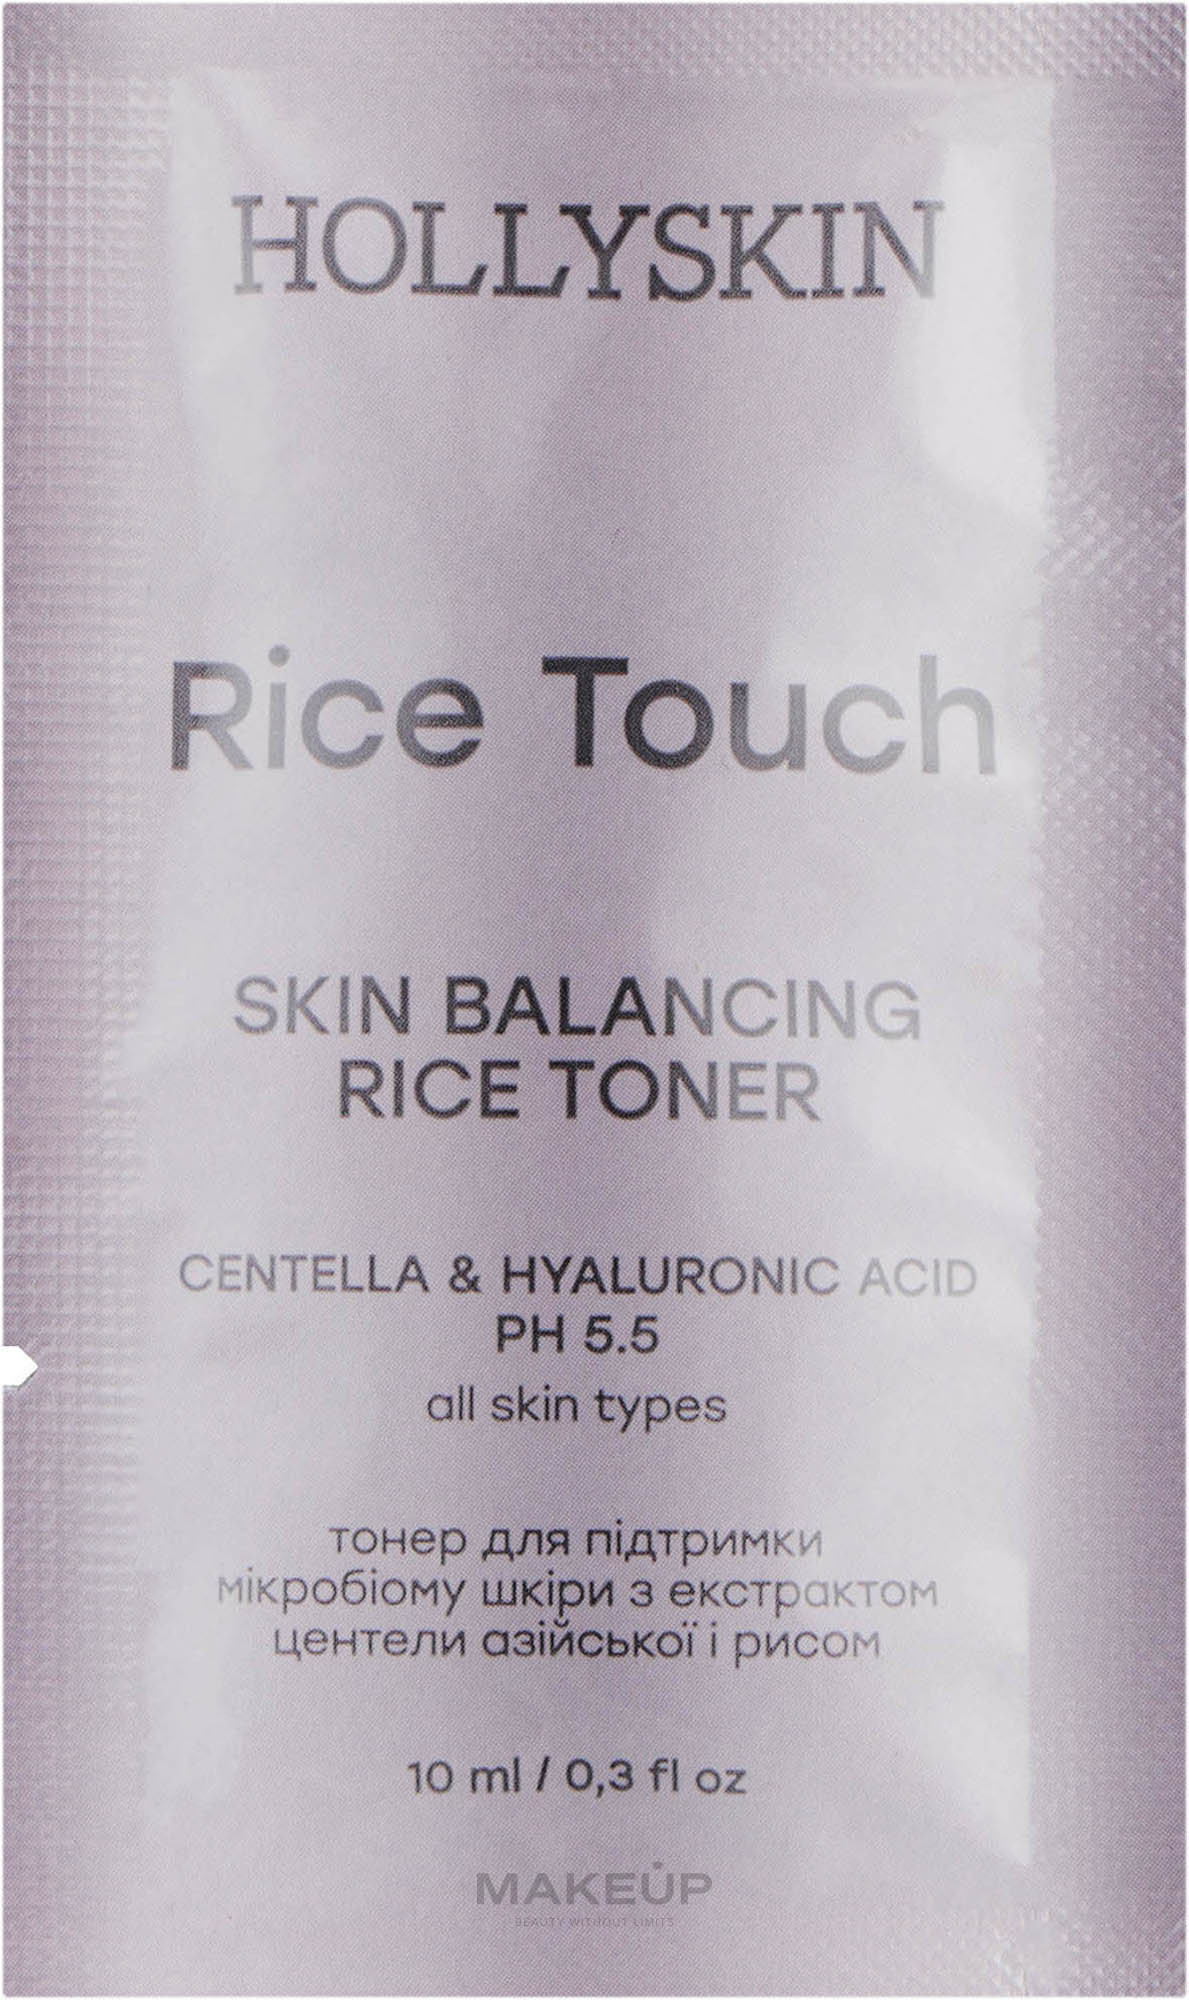 ПОДАРОК! Тонер для поддержания микробиома кожи с экстрактом центеллы азиатской и рисом - Hollyskin Rice Touch — фото 10ml